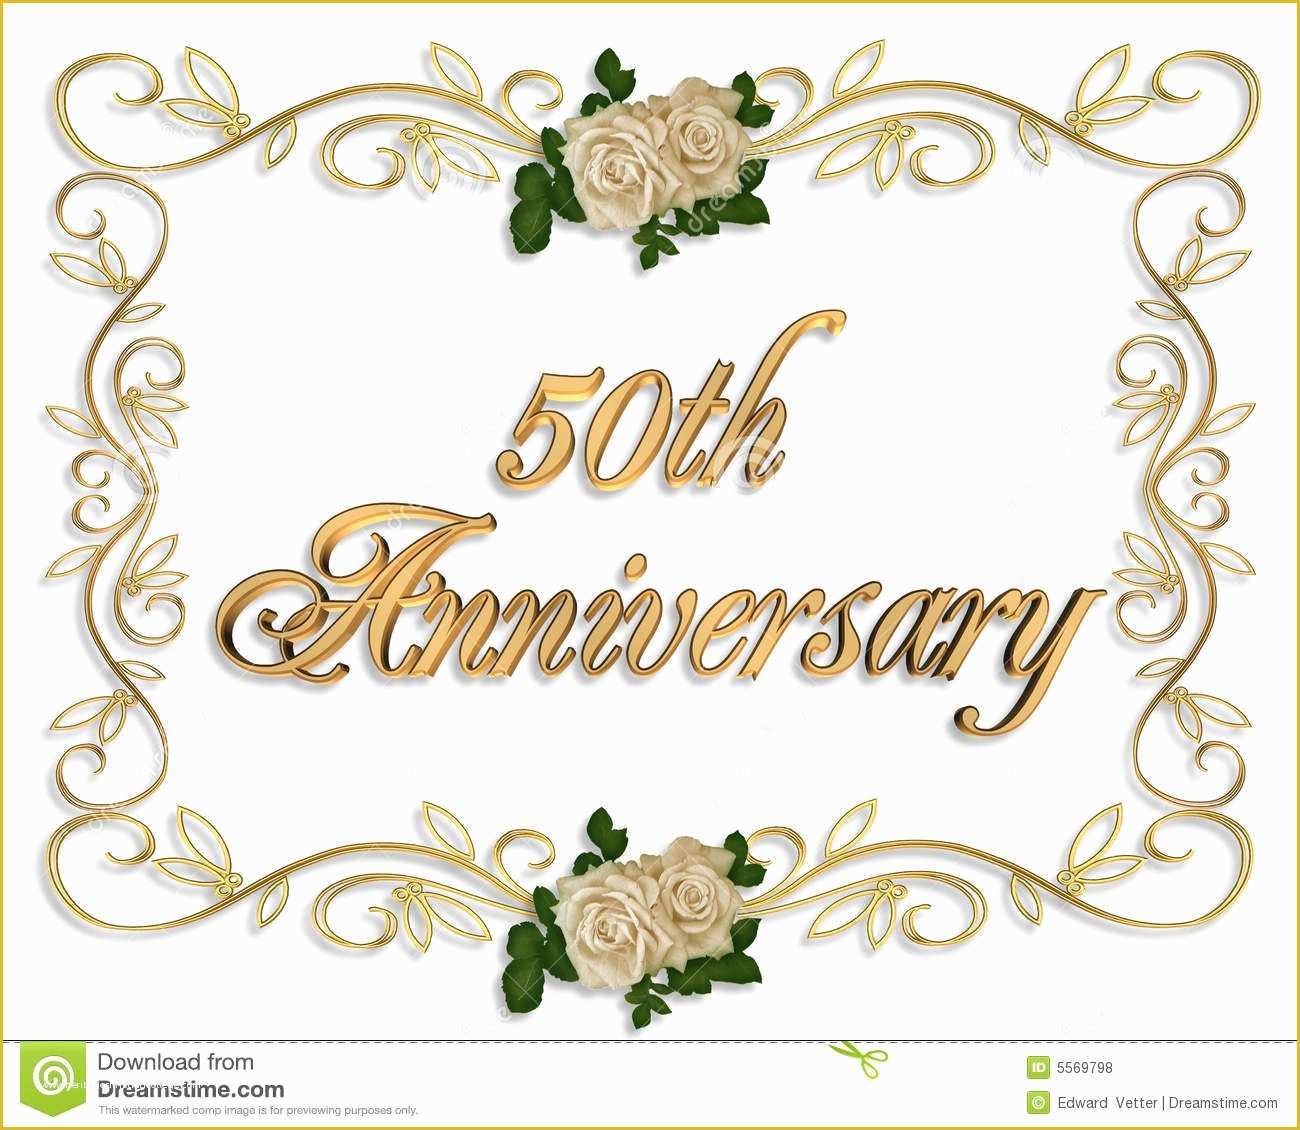 Free Printable 50th Wedding Anniversary Invitation Templates Of 50th Anniversary Invitation Backgrounds